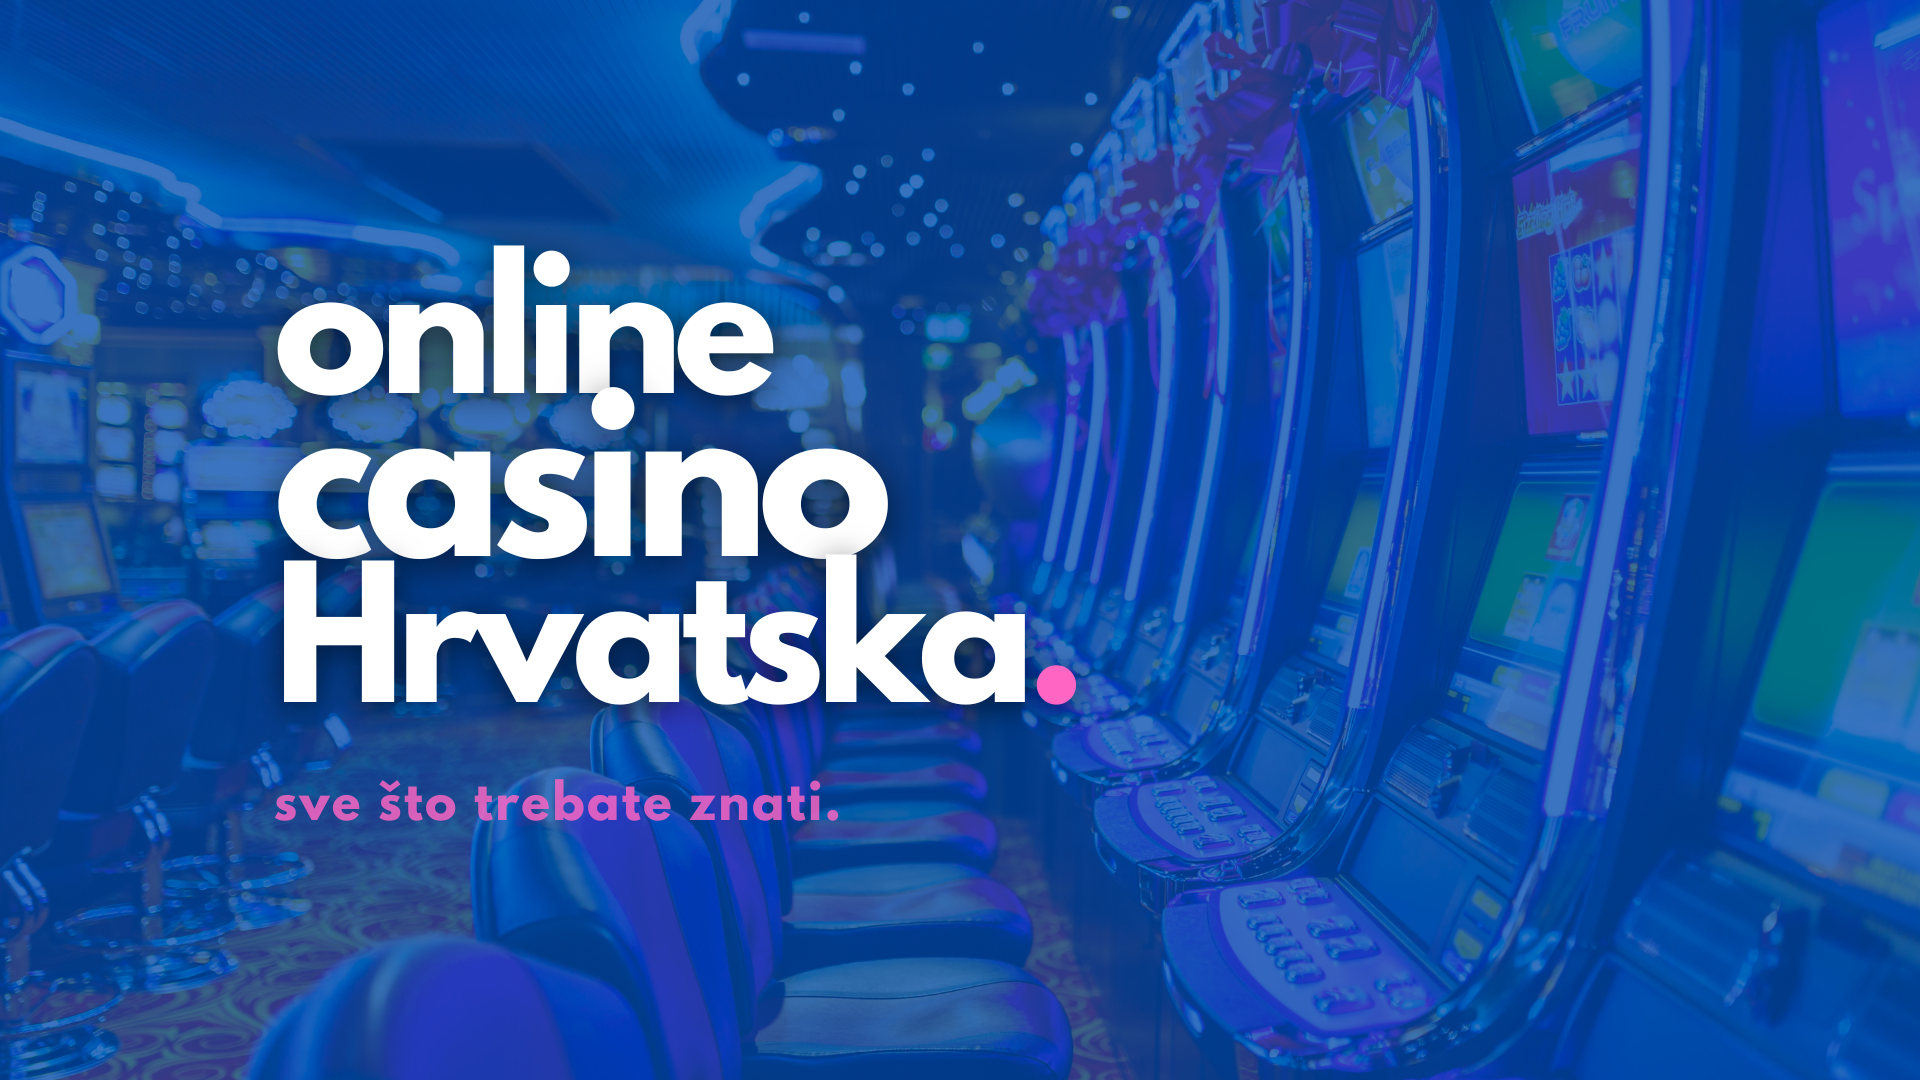 Sexy People Do Hrvatski casino :)